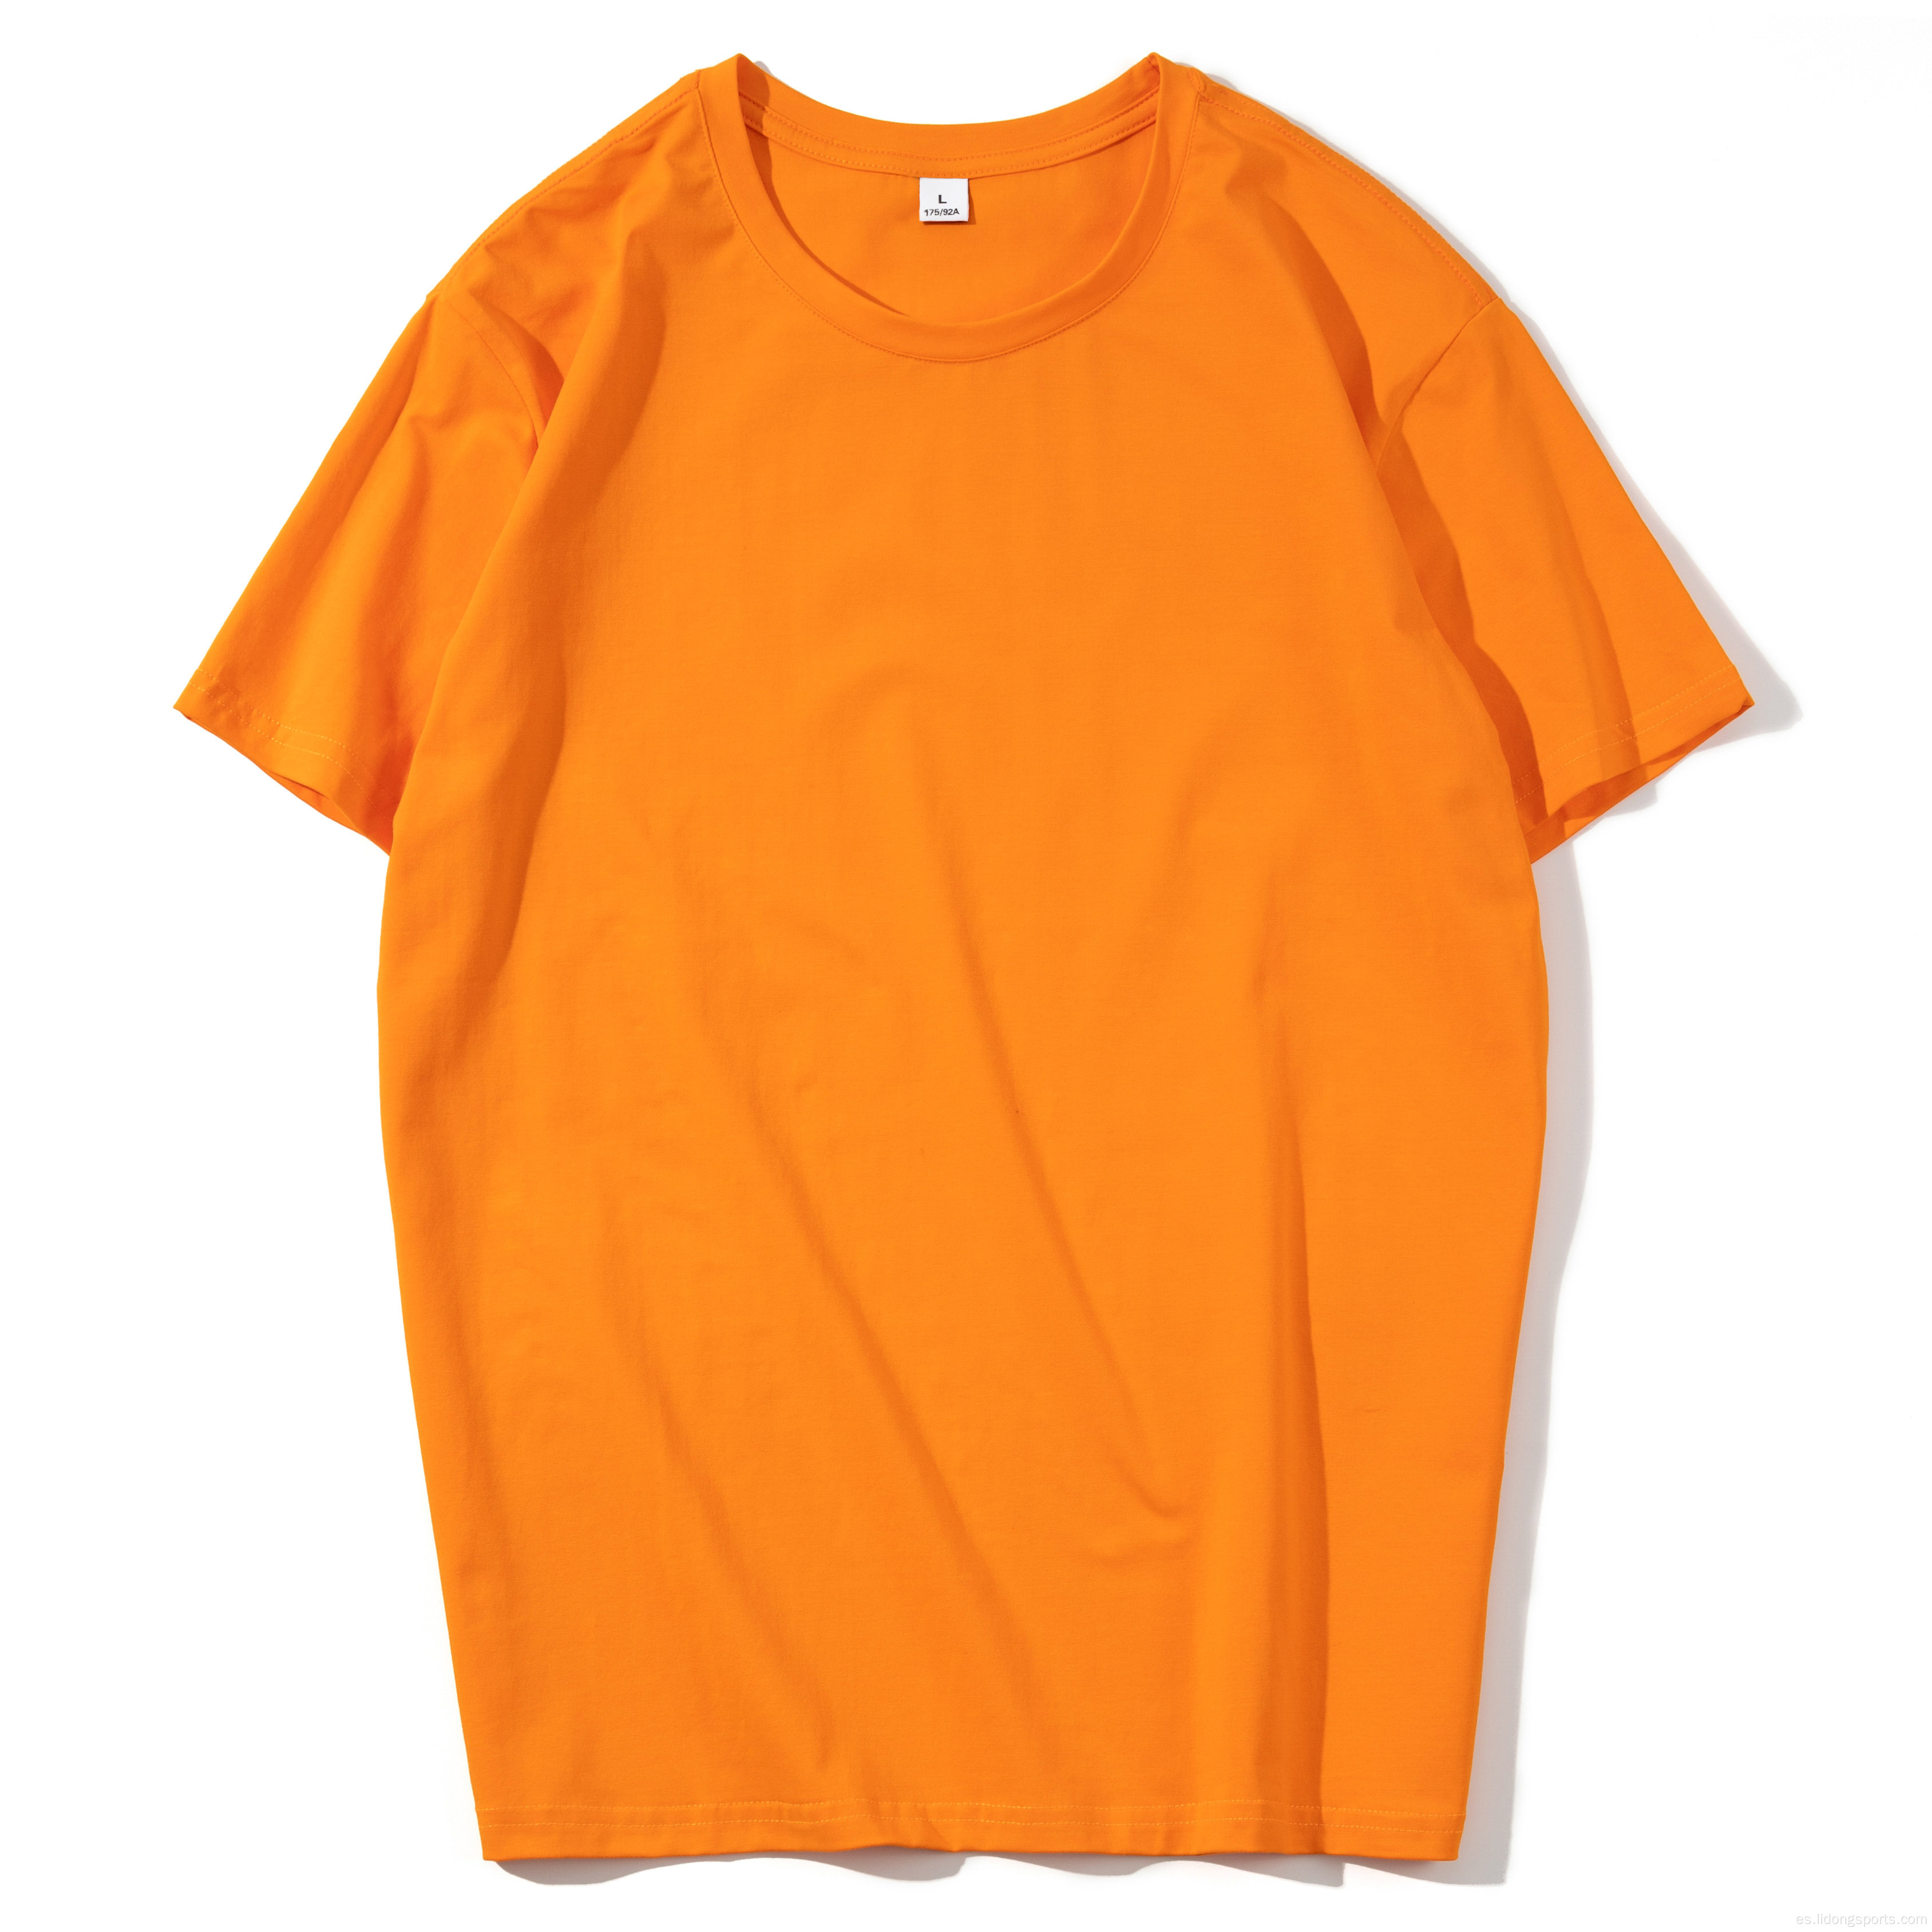 Venta al por mayor Multicolor Casual T-shirt Camiseta cómoda Tela Manga corta Tallas grandes Tamaño Camisetas